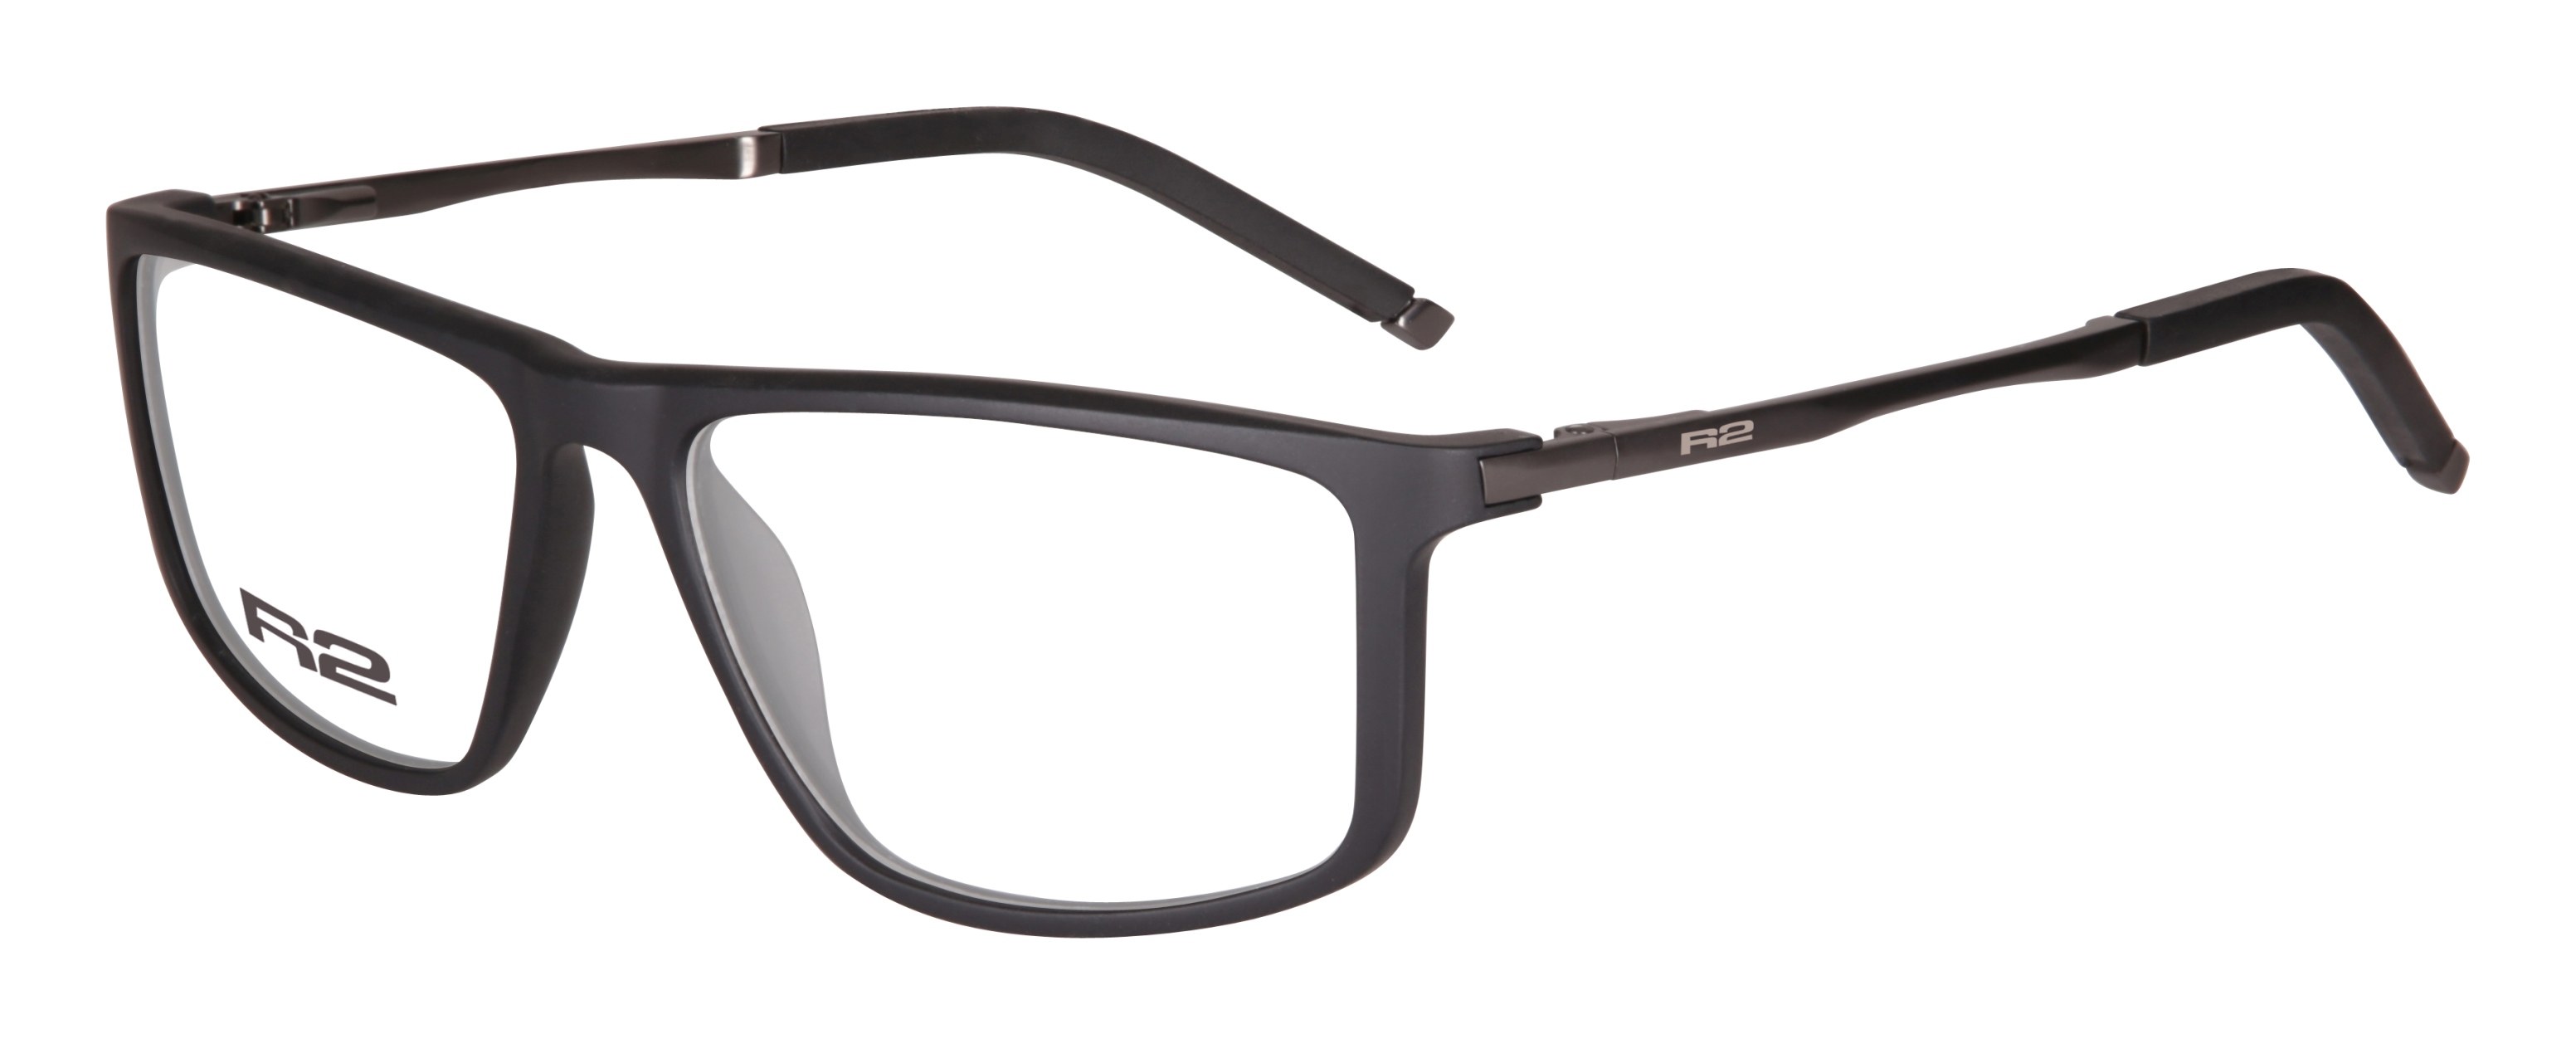 Sportovní dioptrické brýle R2 CROSS MAT105C3 - standard